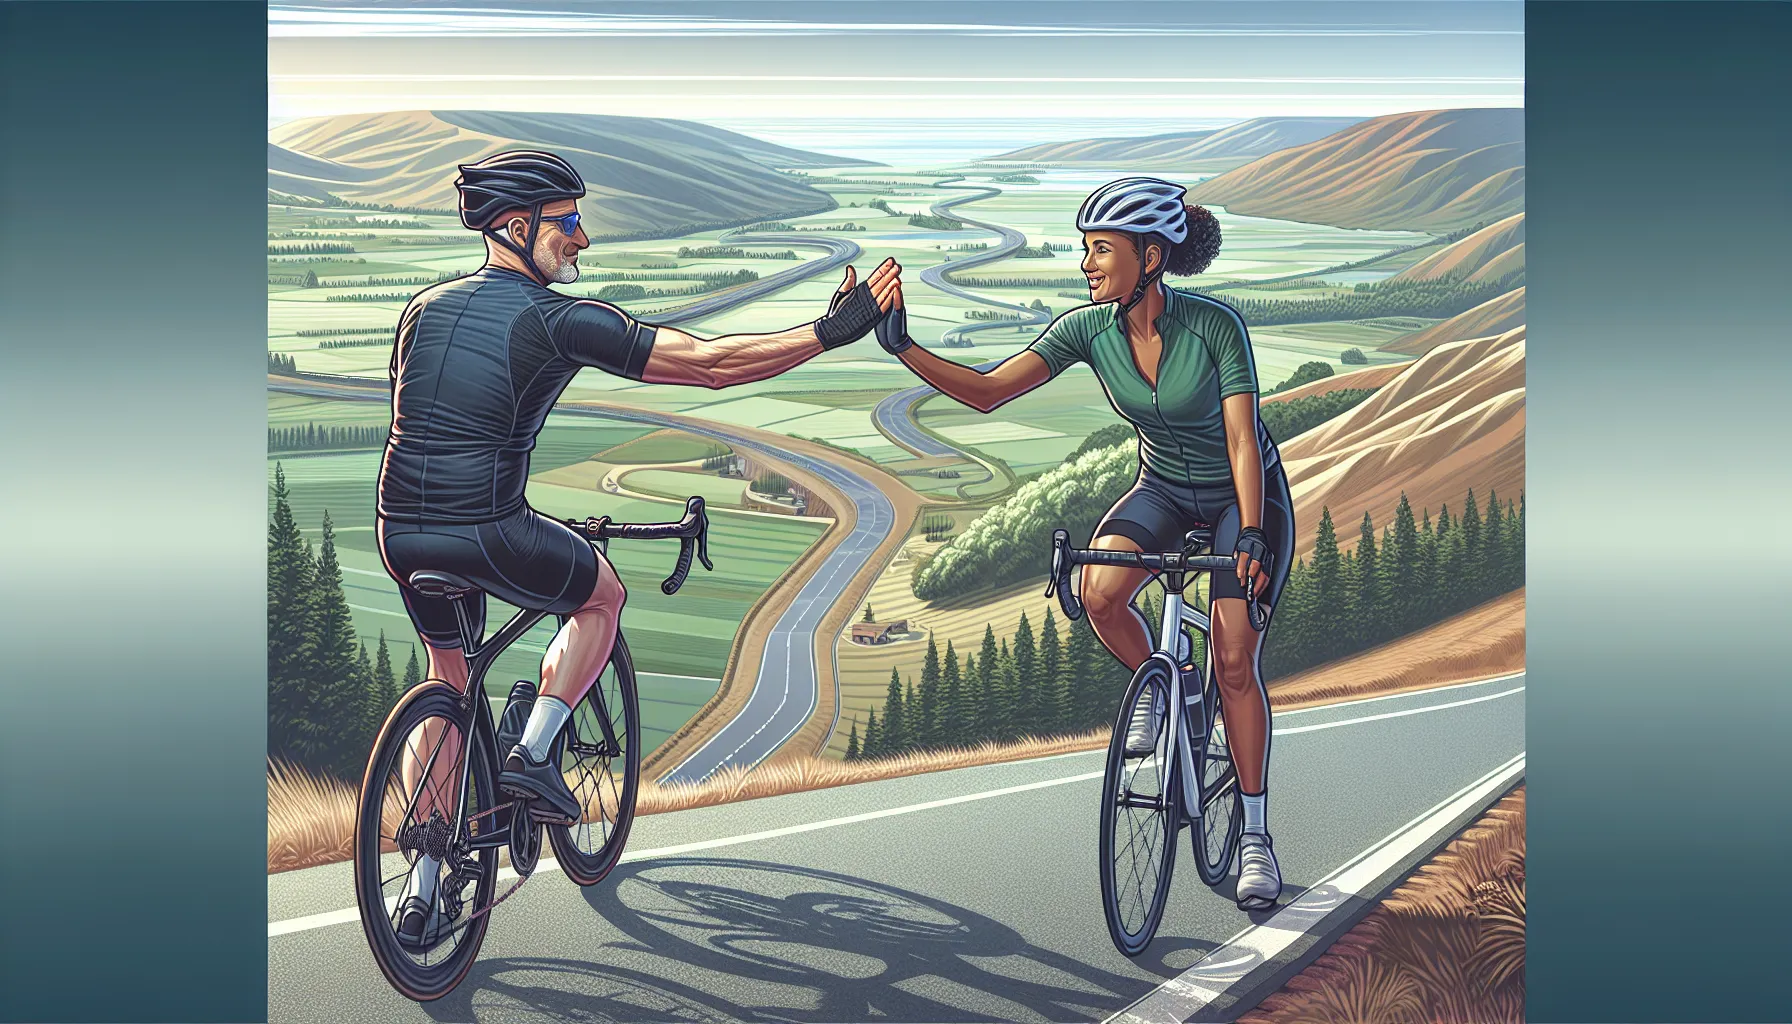 O ciclismo é uma atividade que vai além do simples exercício físico. Além de ser uma forma divertida de se manter em forma, o ciclismo também pode ser uma ótima maneira de construir amizades duradouras.

Quando saímos para um passeio de bicicleta com amigos, temos a oportunidade de compartilhar momentos especiais juntos. Enquanto pedalamos pelas estradas ou tril